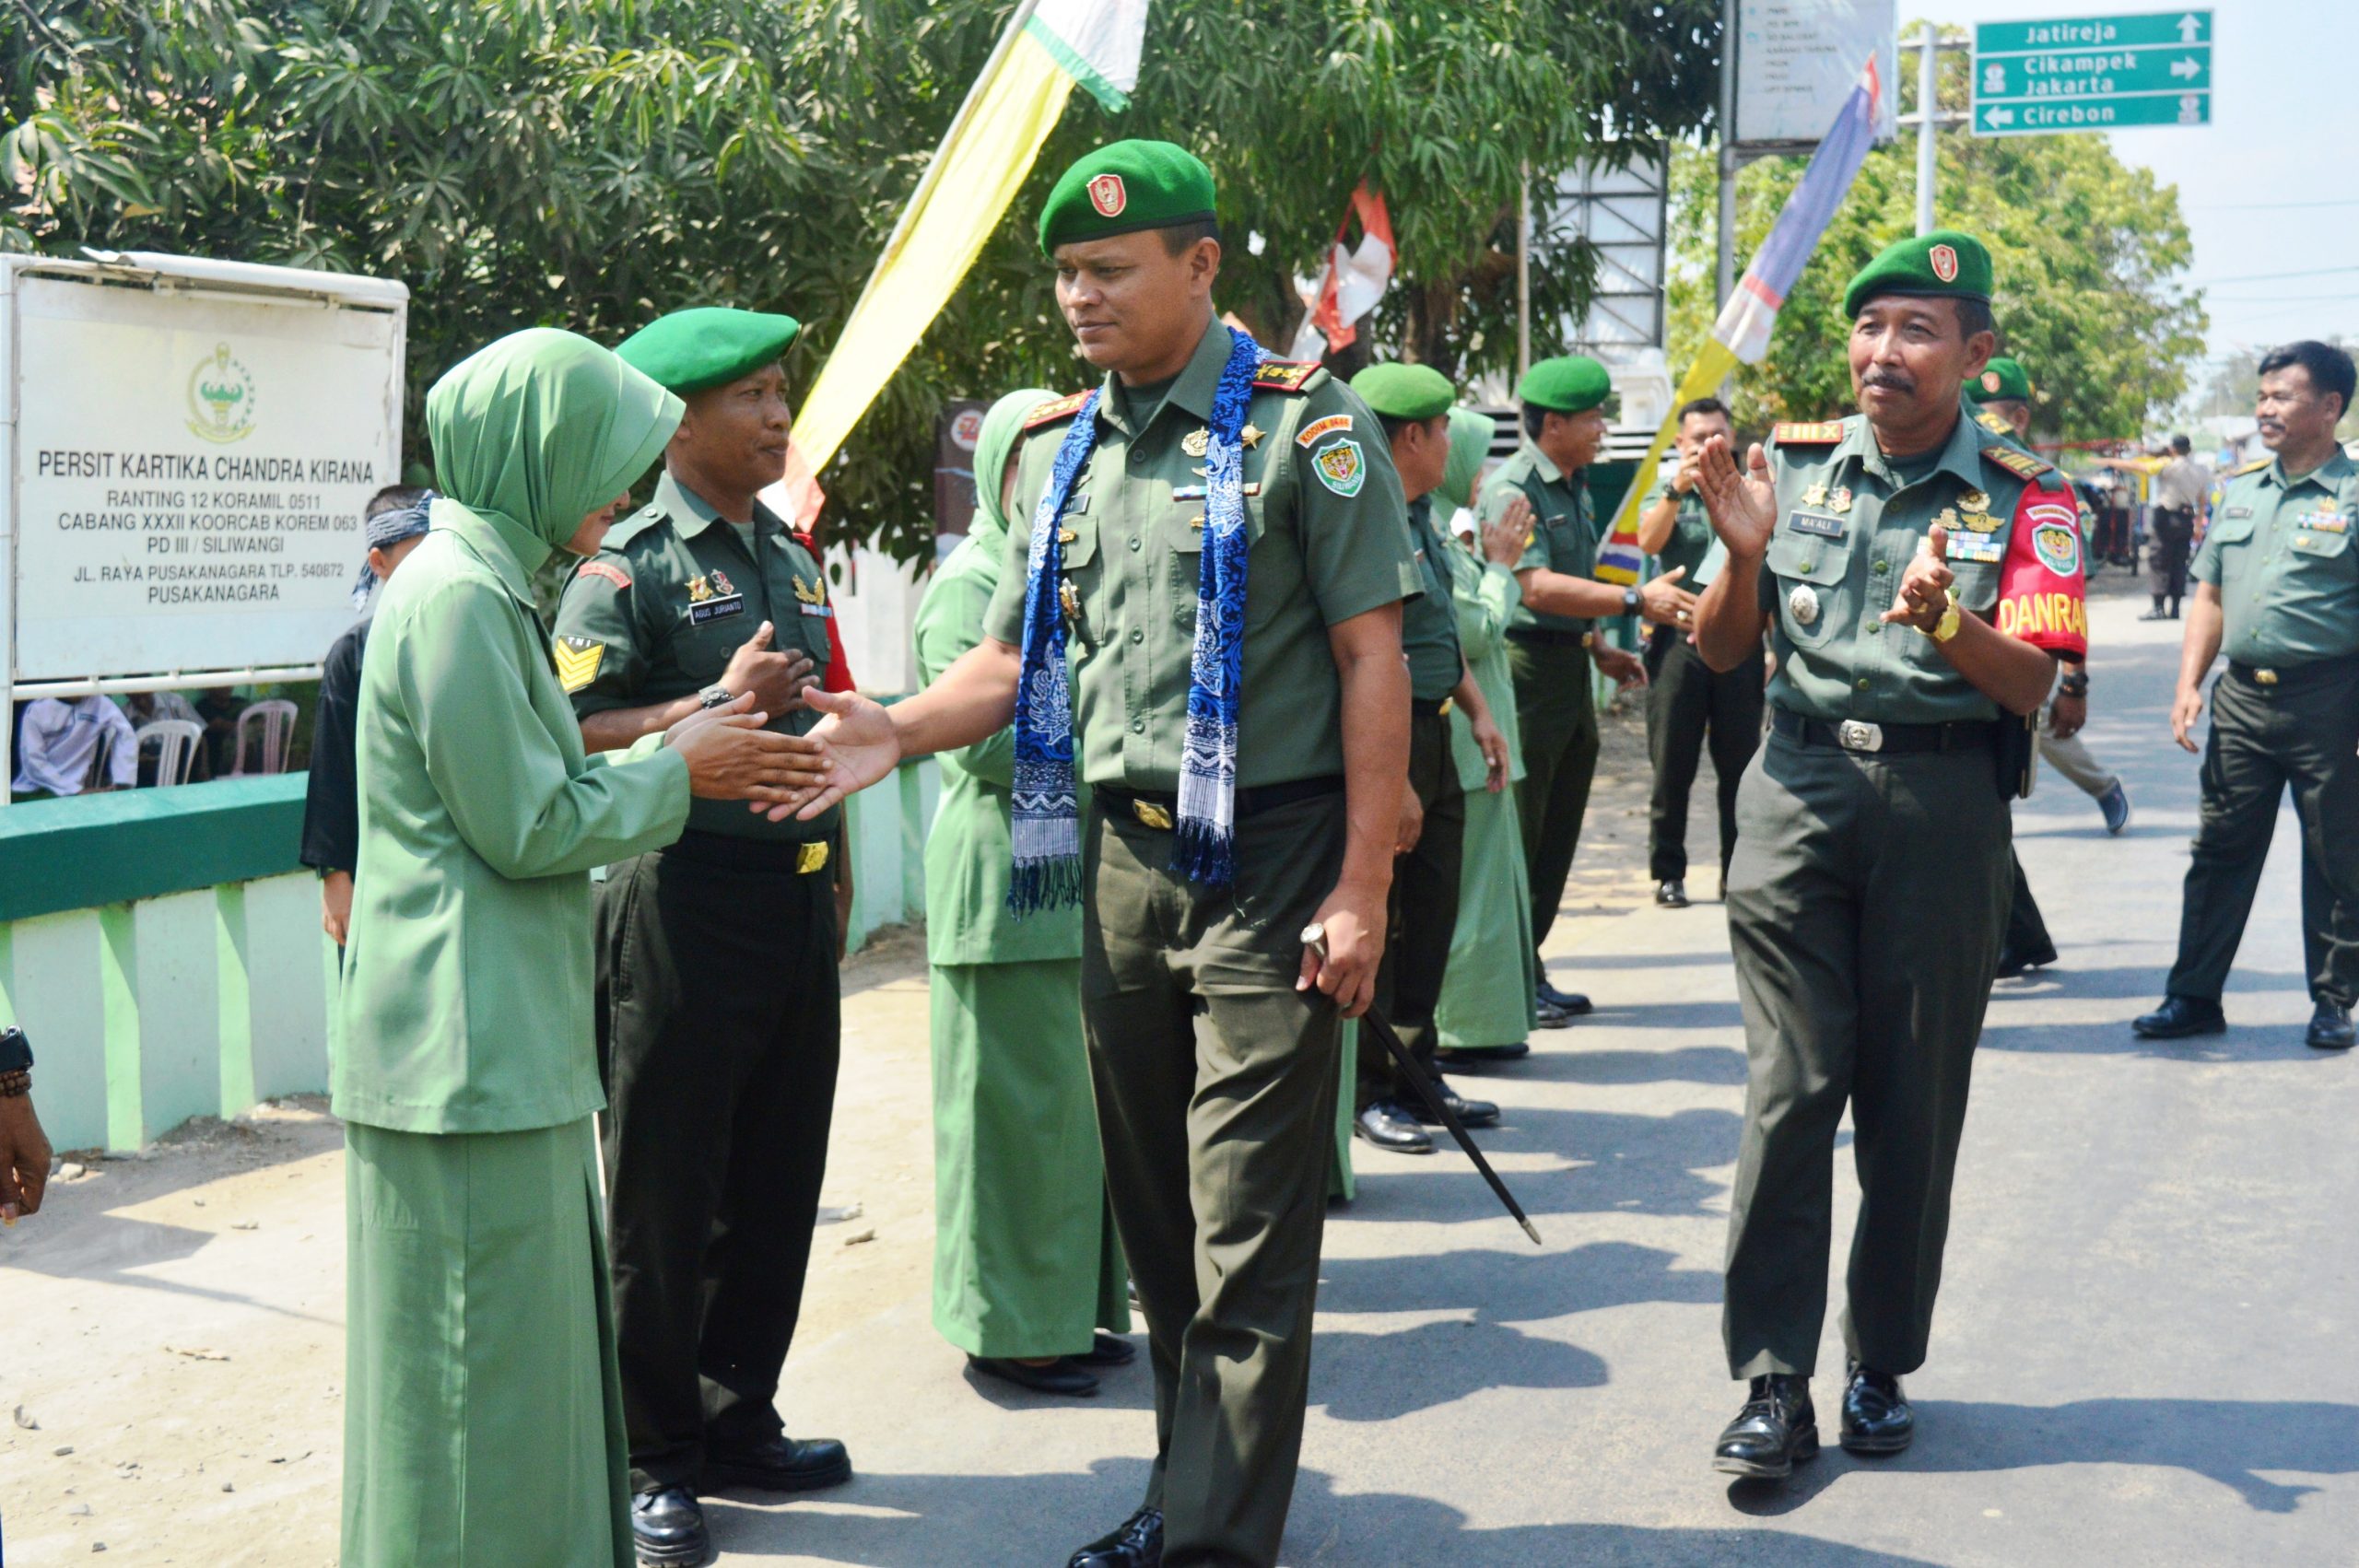 TNI Jaga Keamanan dan Nilai Pancasila, Berharap Kondisi Bangsa Kembali Kondusif